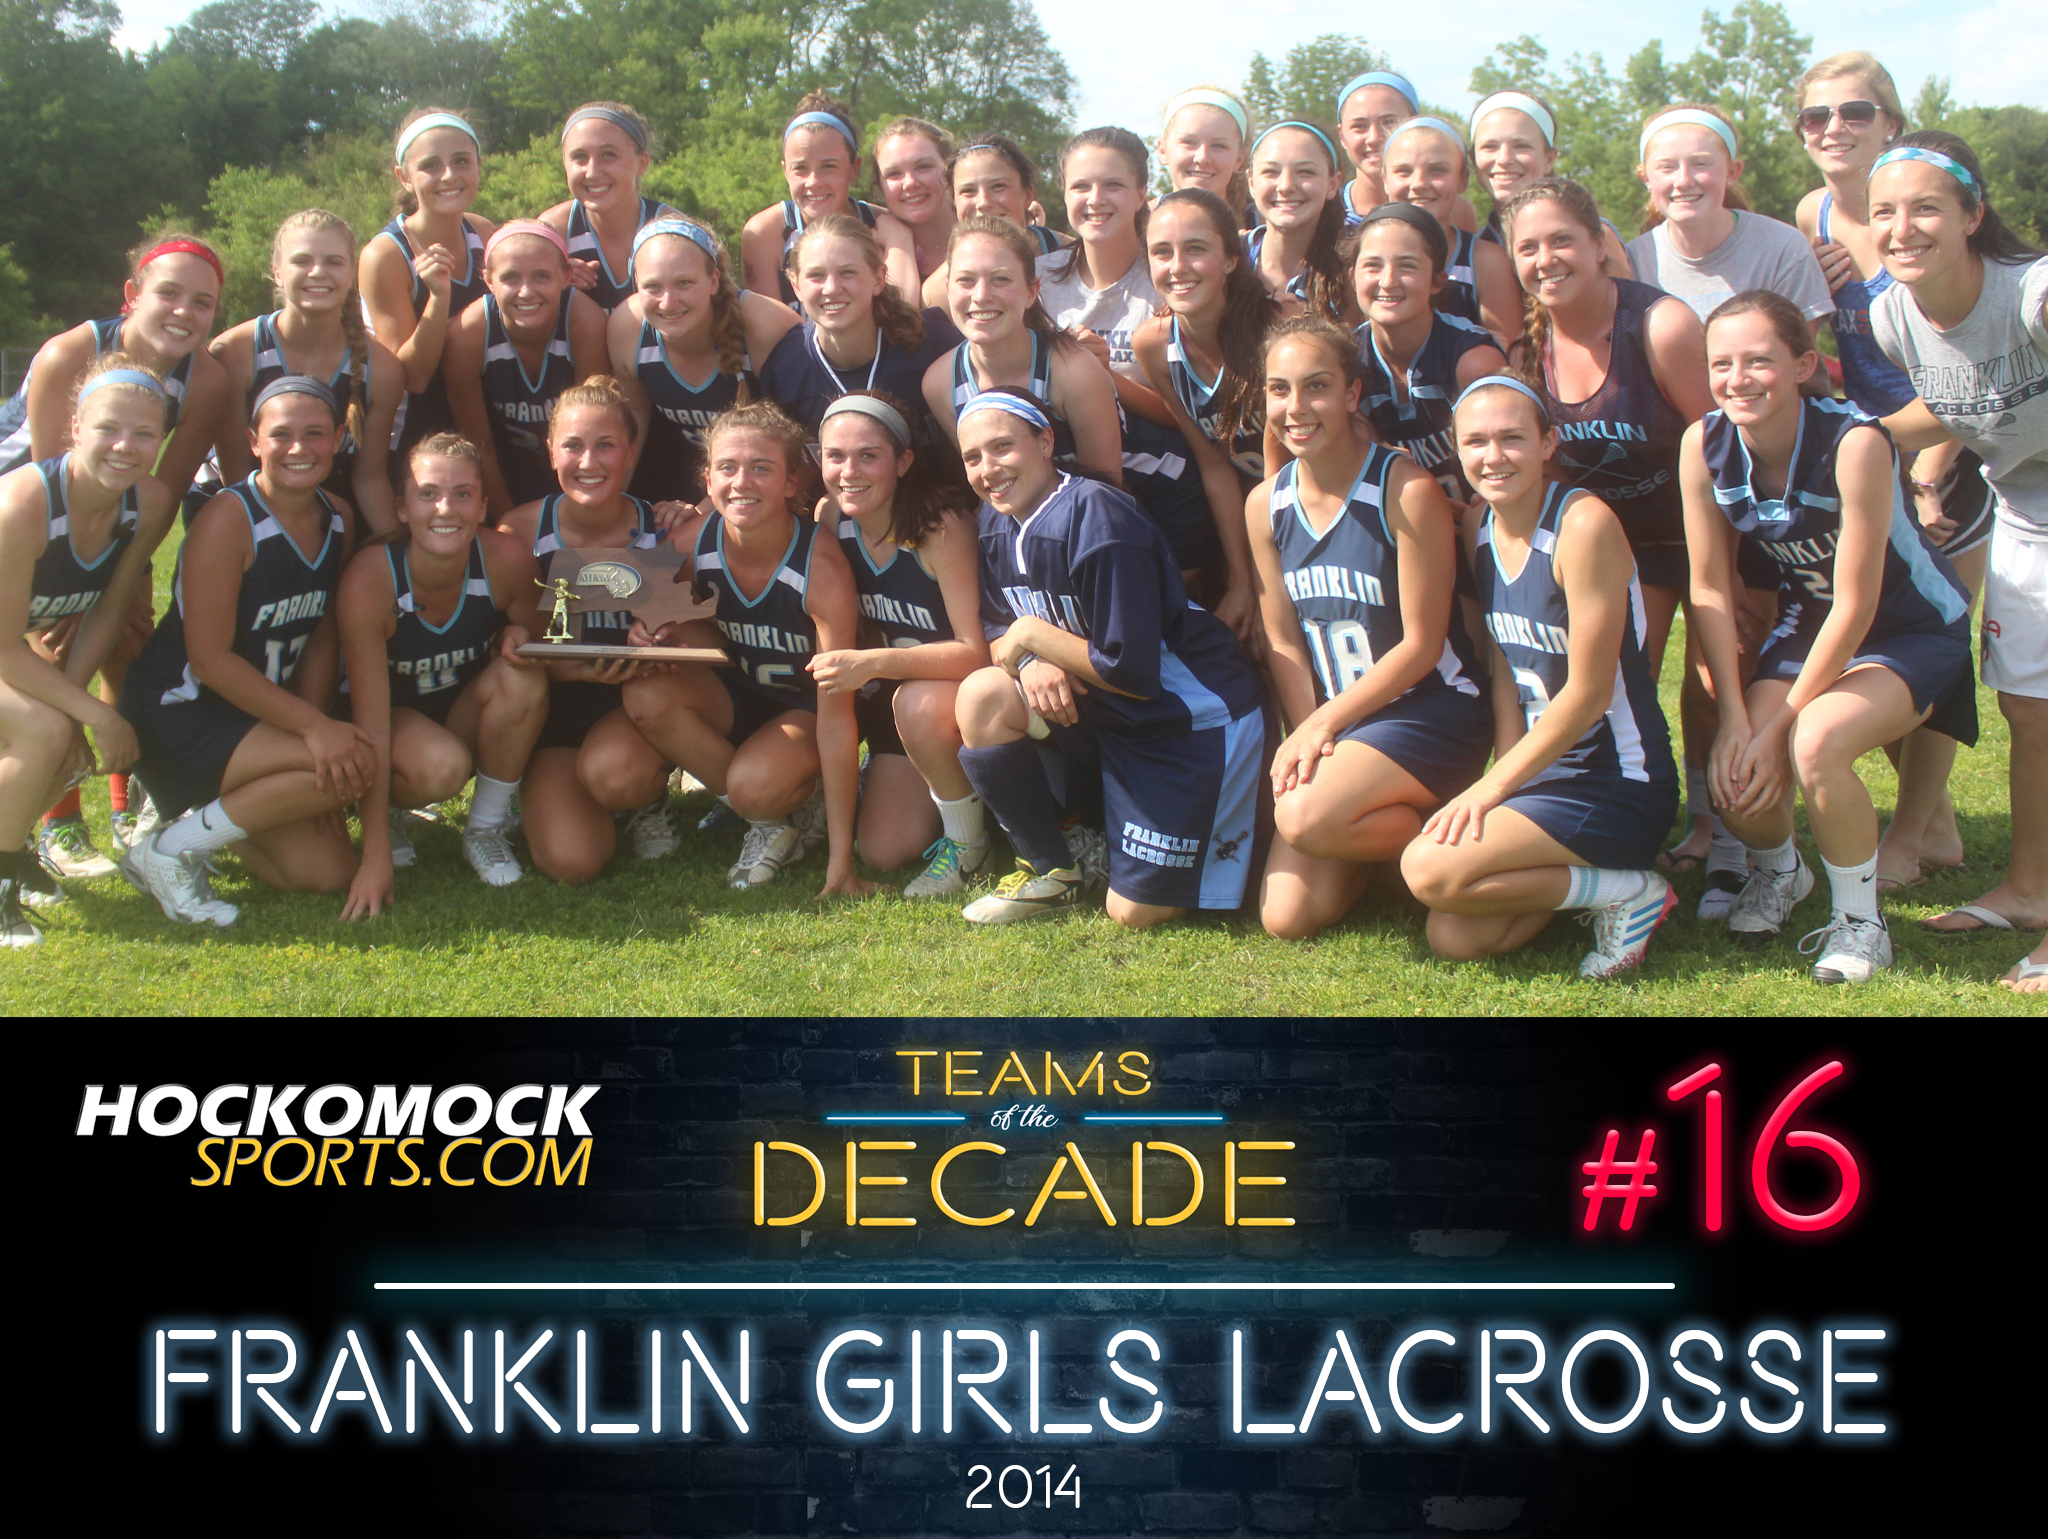 Franklin girls lacrosse